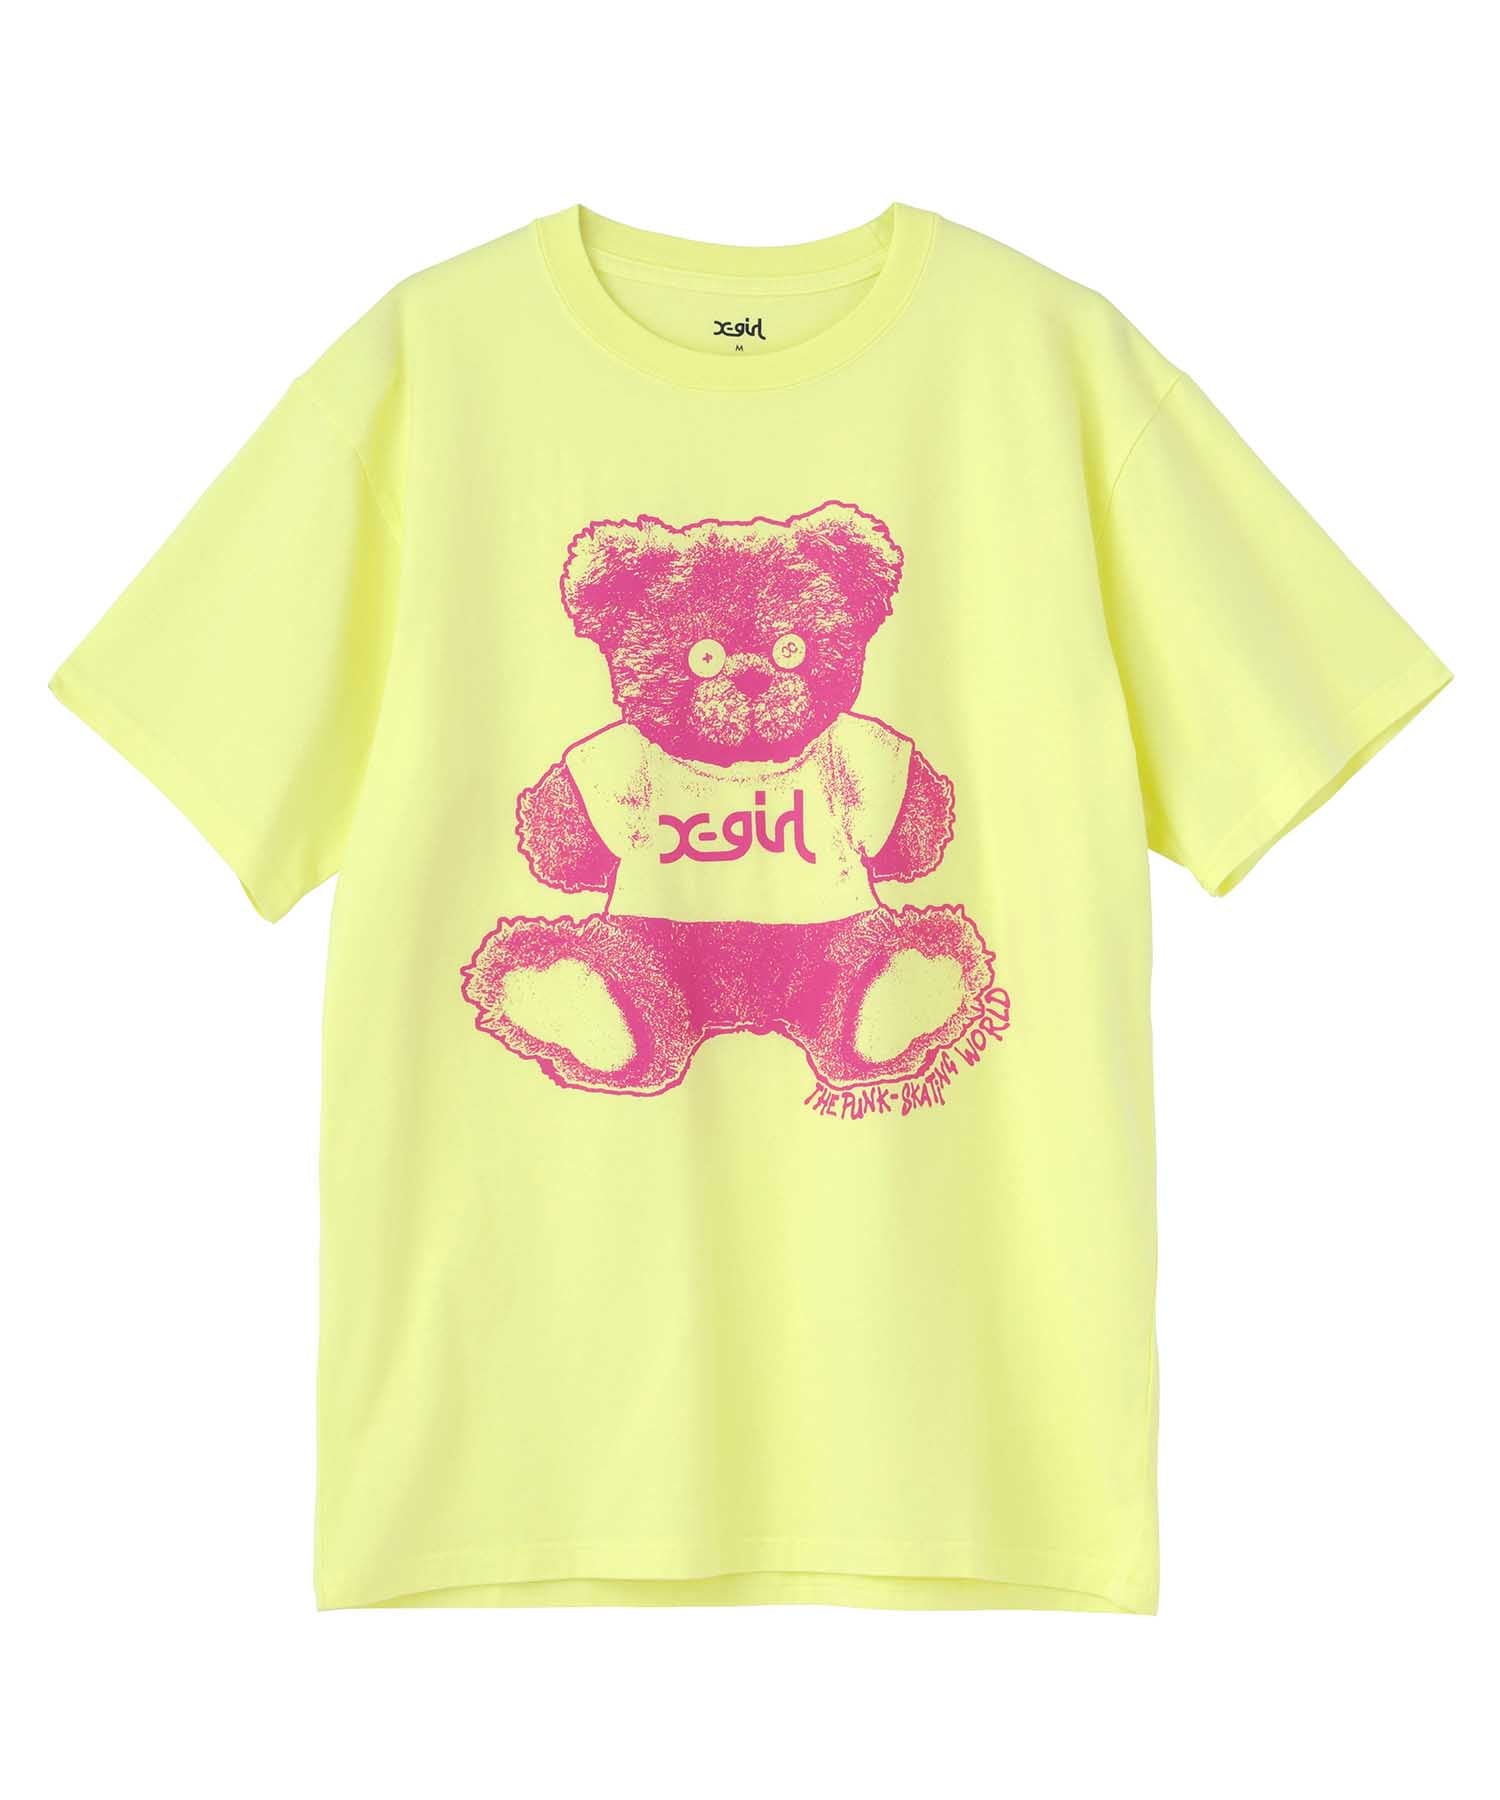 STUFFED BEAR S/S TEE – X-girl